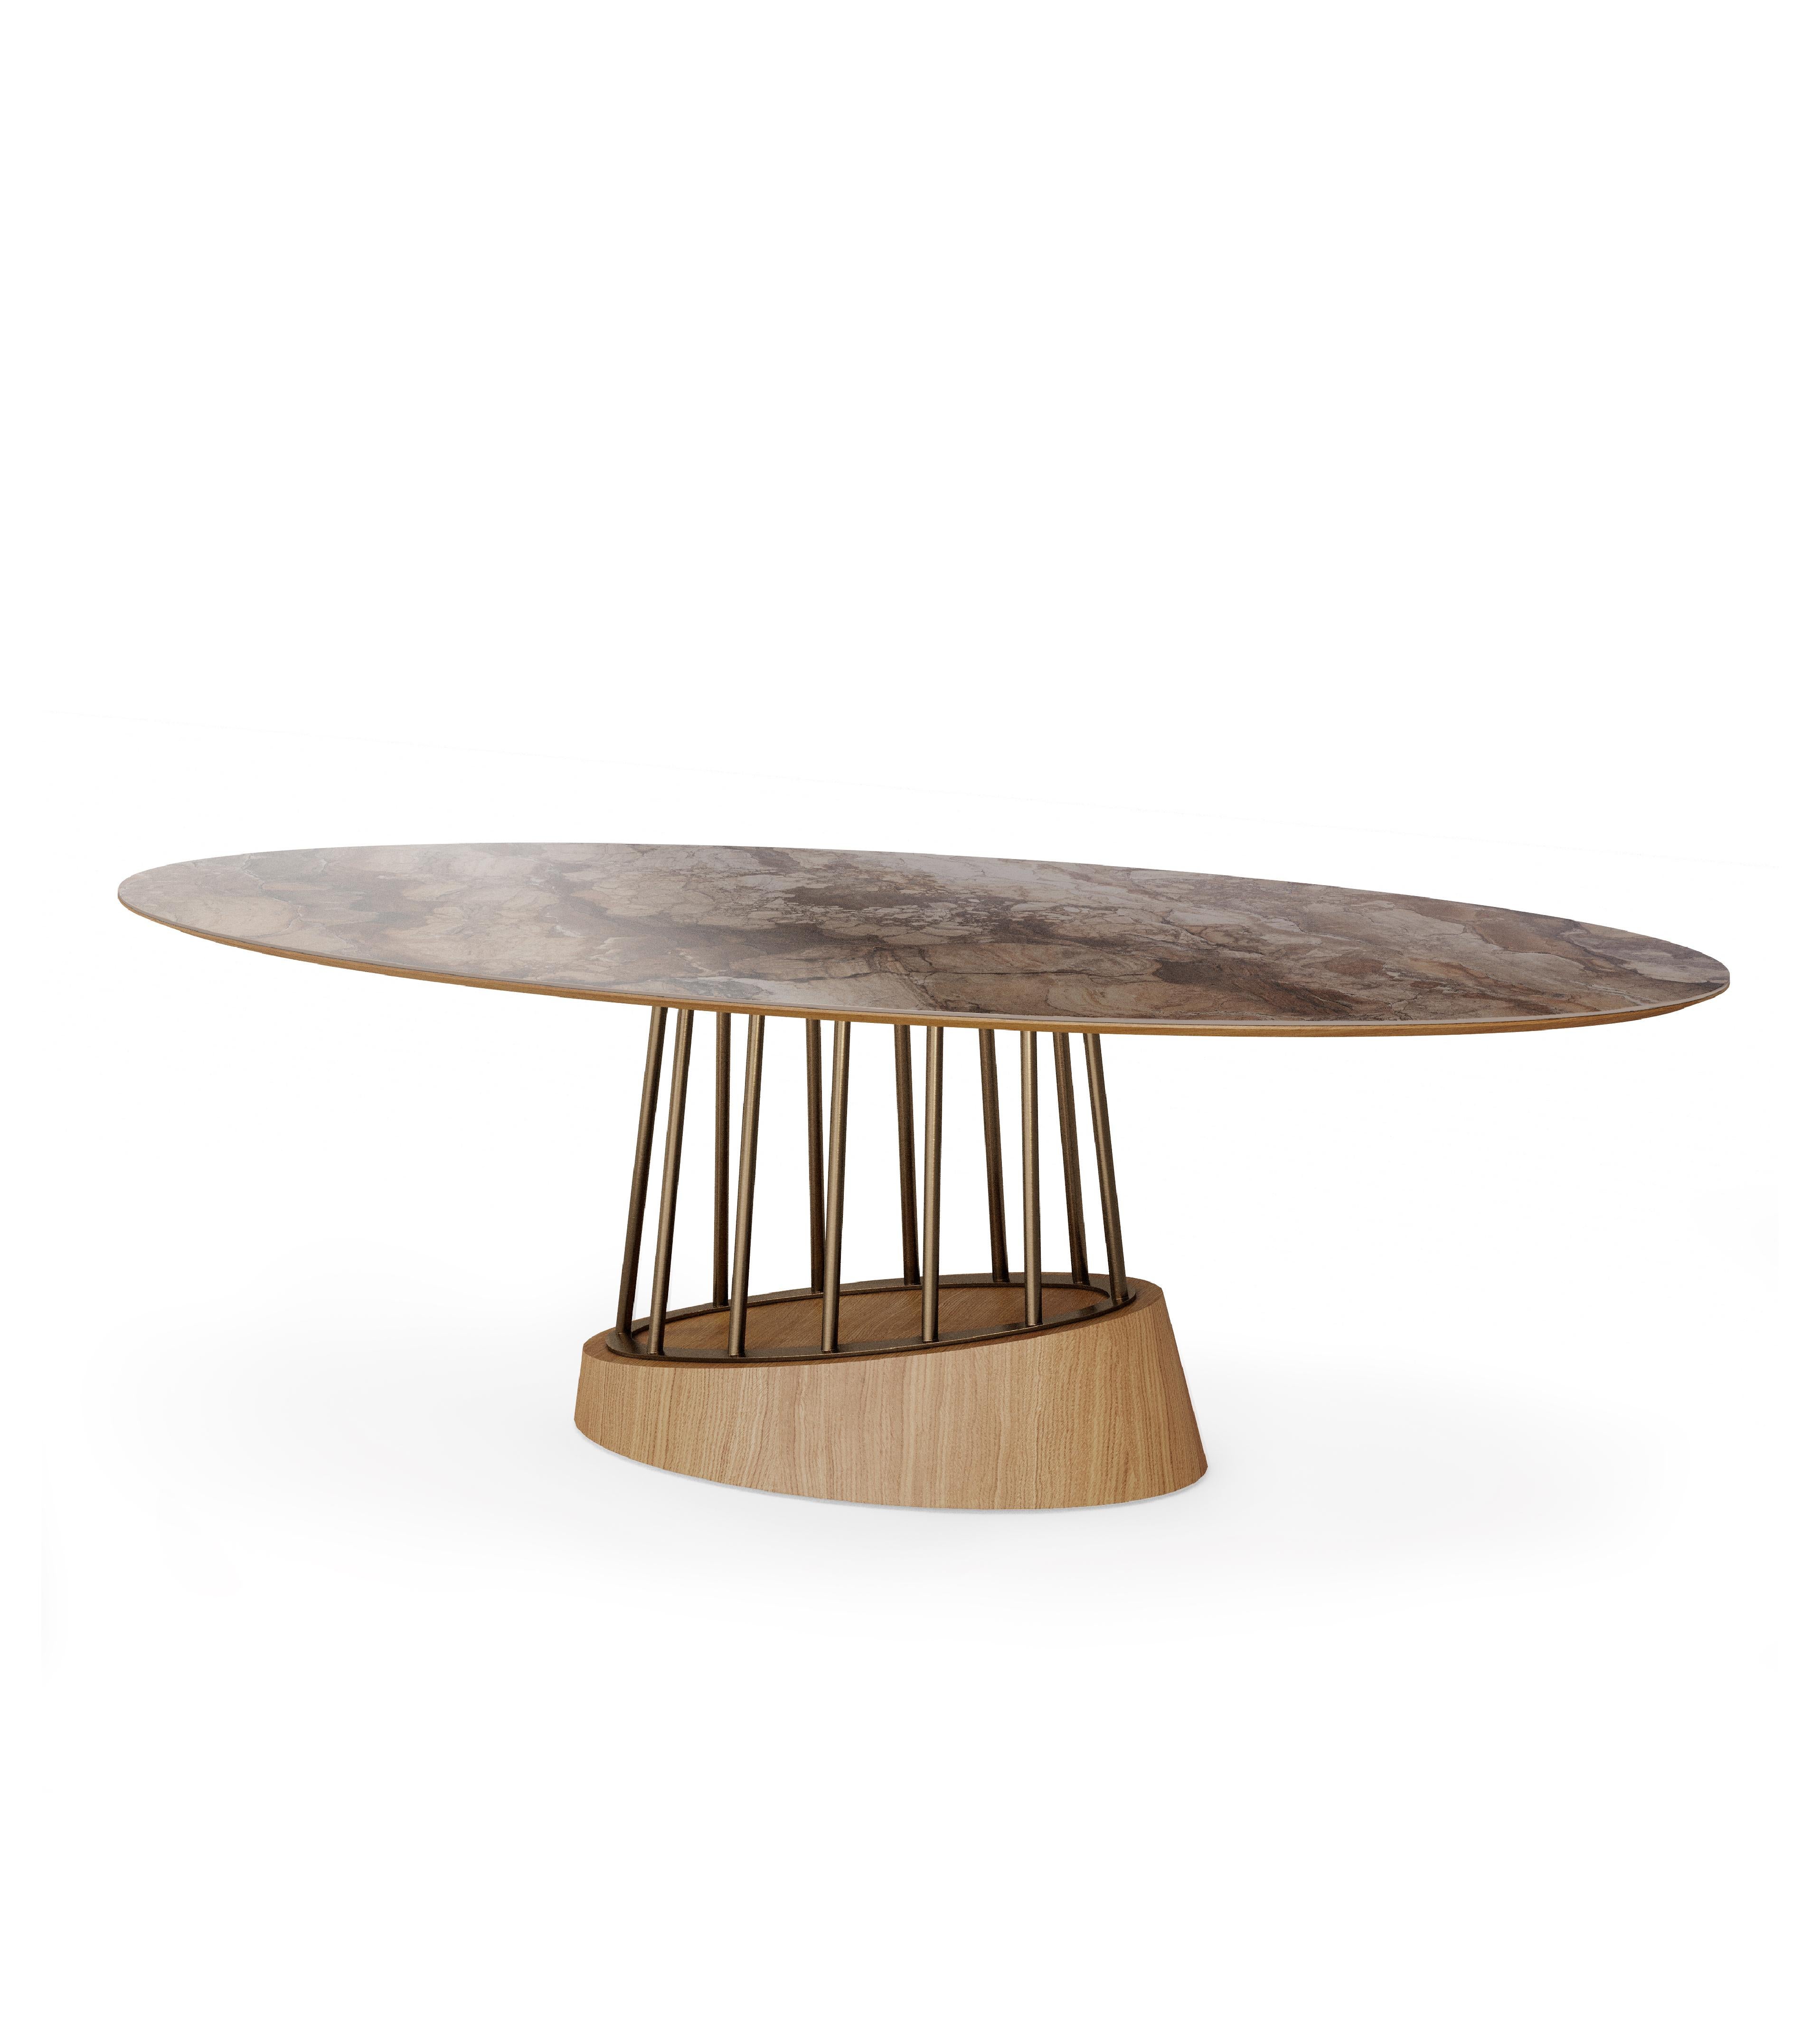 Soleil est une table de salle à manger extravagante au design contemporain. Cette table de salle à manger présente une combinaison de bois, d'acier inoxydable et de céramique.